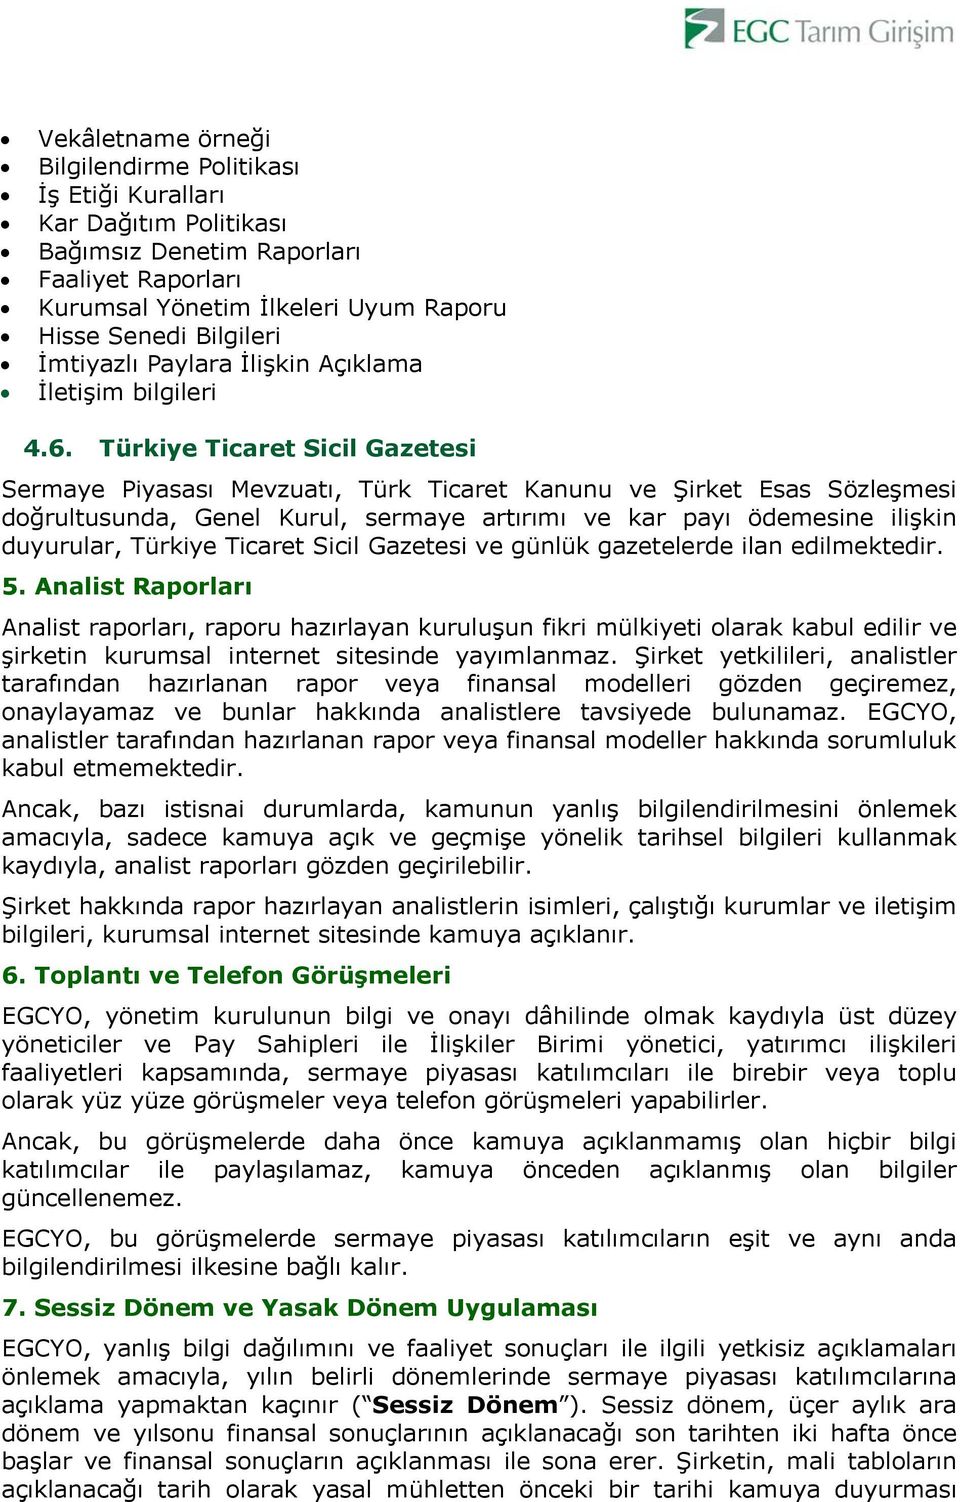 Türkiye Ticaret Sicil Gazetesi Sermaye Piyasası Mevzuatı, Türk Ticaret Kanunu ve Şirket Esas Sözleşmesi doğrultusunda, Genel Kurul, sermaye artırımı ve kar payı ödemesine ilişkin duyurular, Türkiye